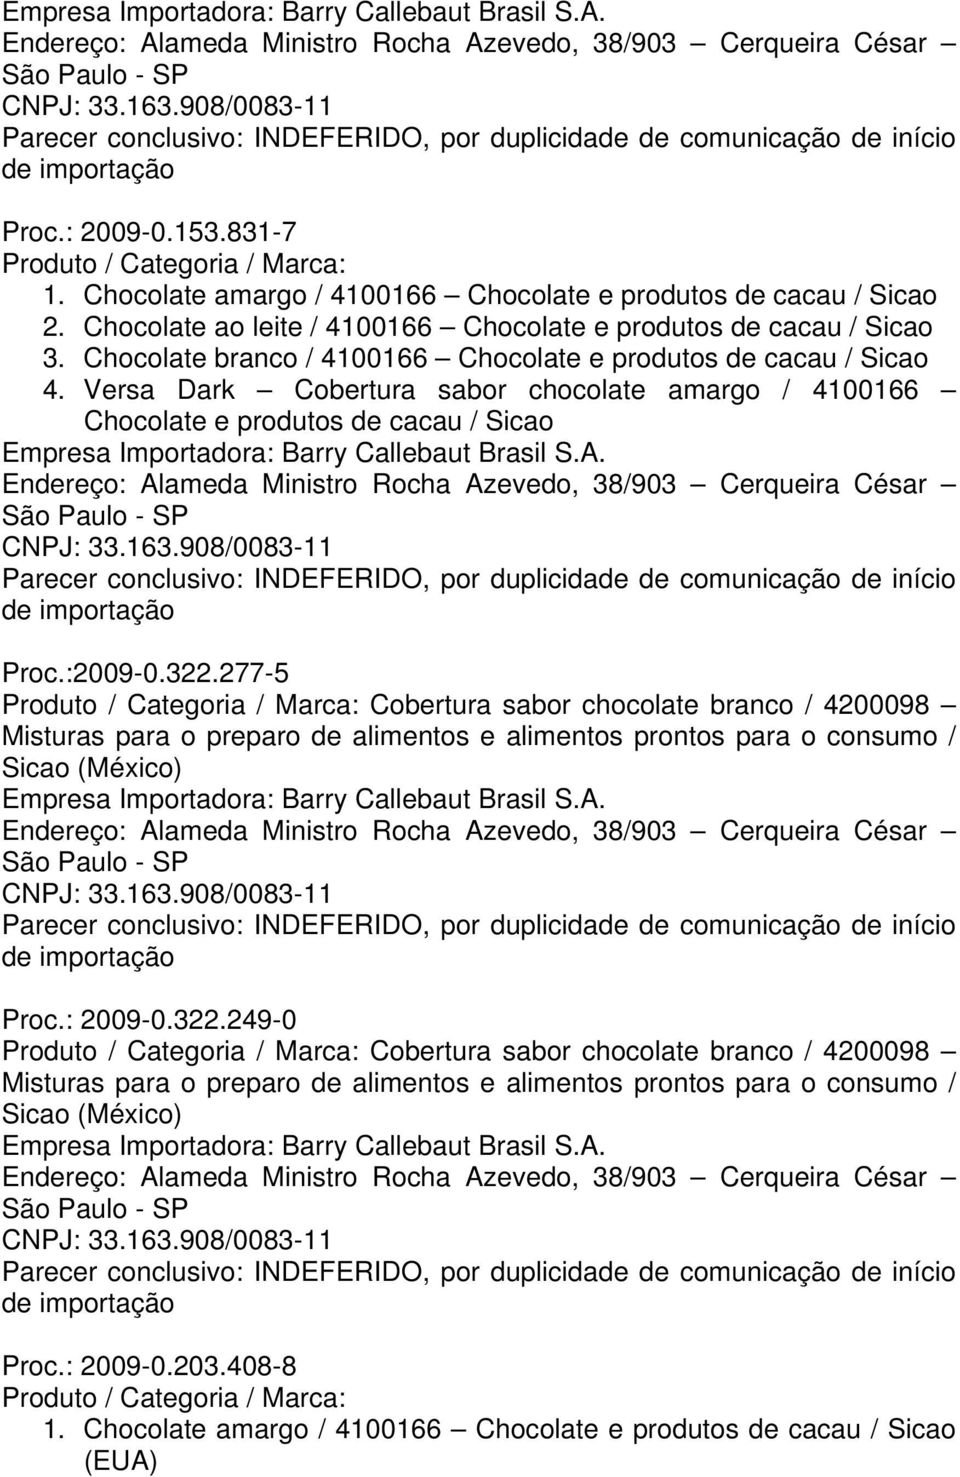 277-5 Cobertura sabor chocolate branco / 4200098 Misturas para o preparo de alimentos e alimentos prontos para o consumo / Sicao Proc.: 2009-0.322.